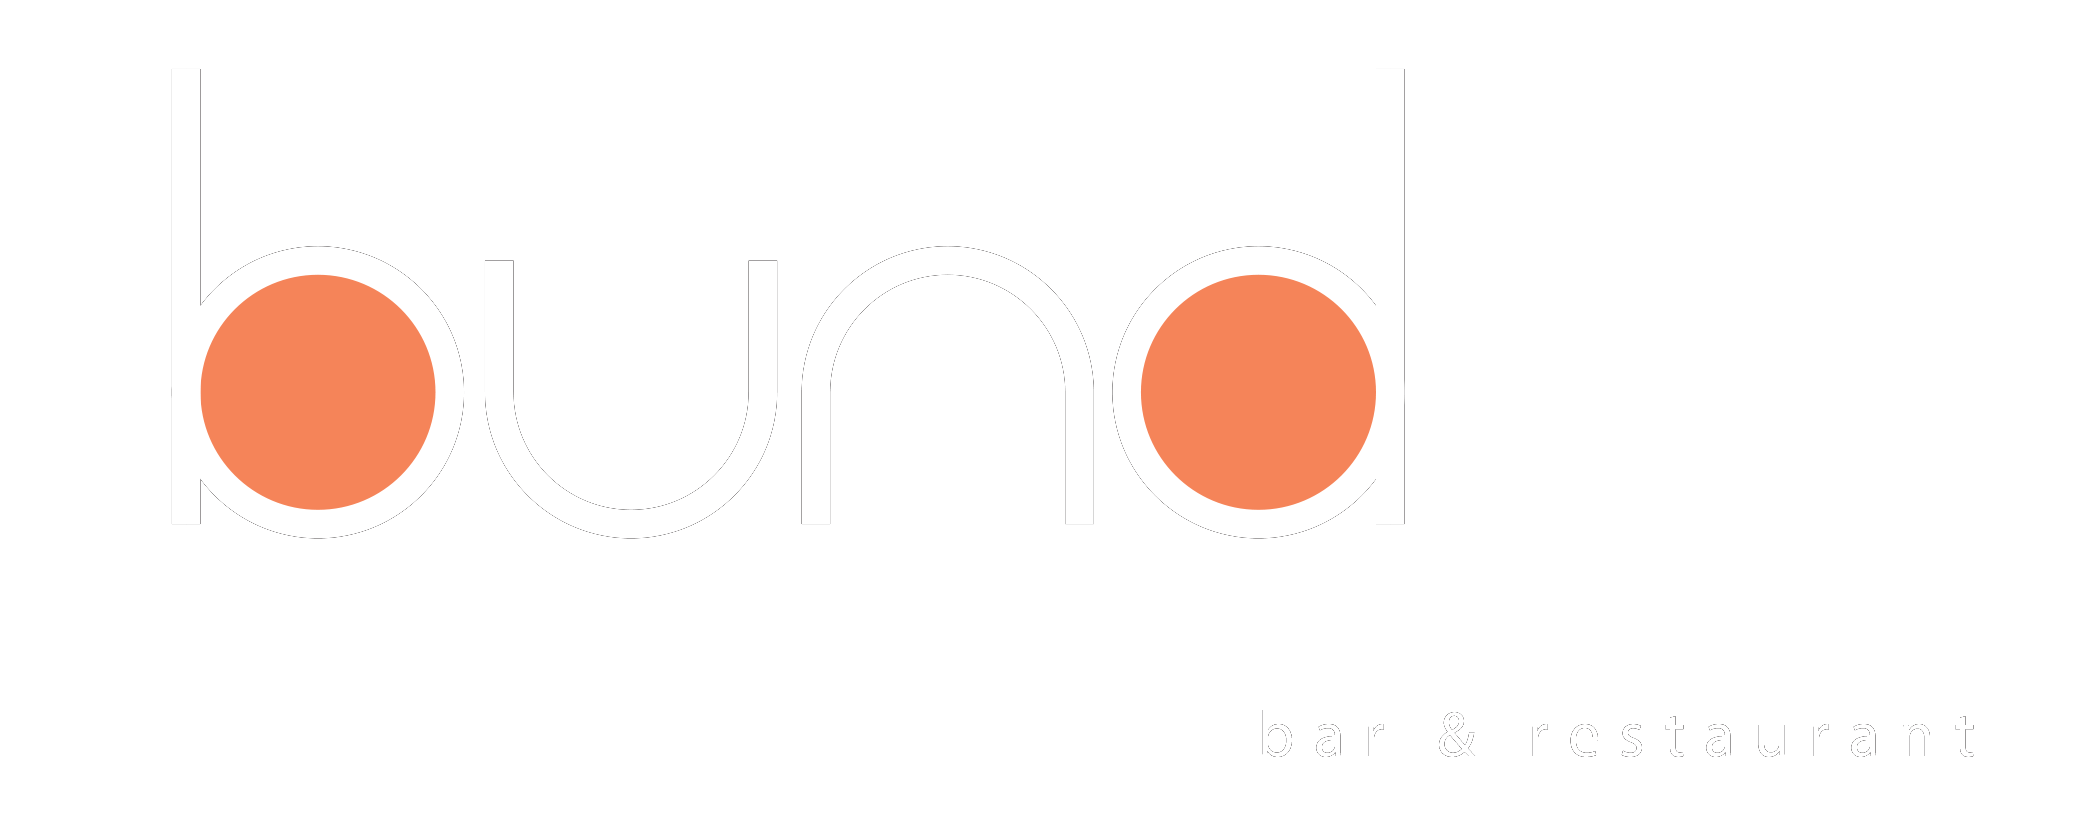 Bund Restaurant & Bar